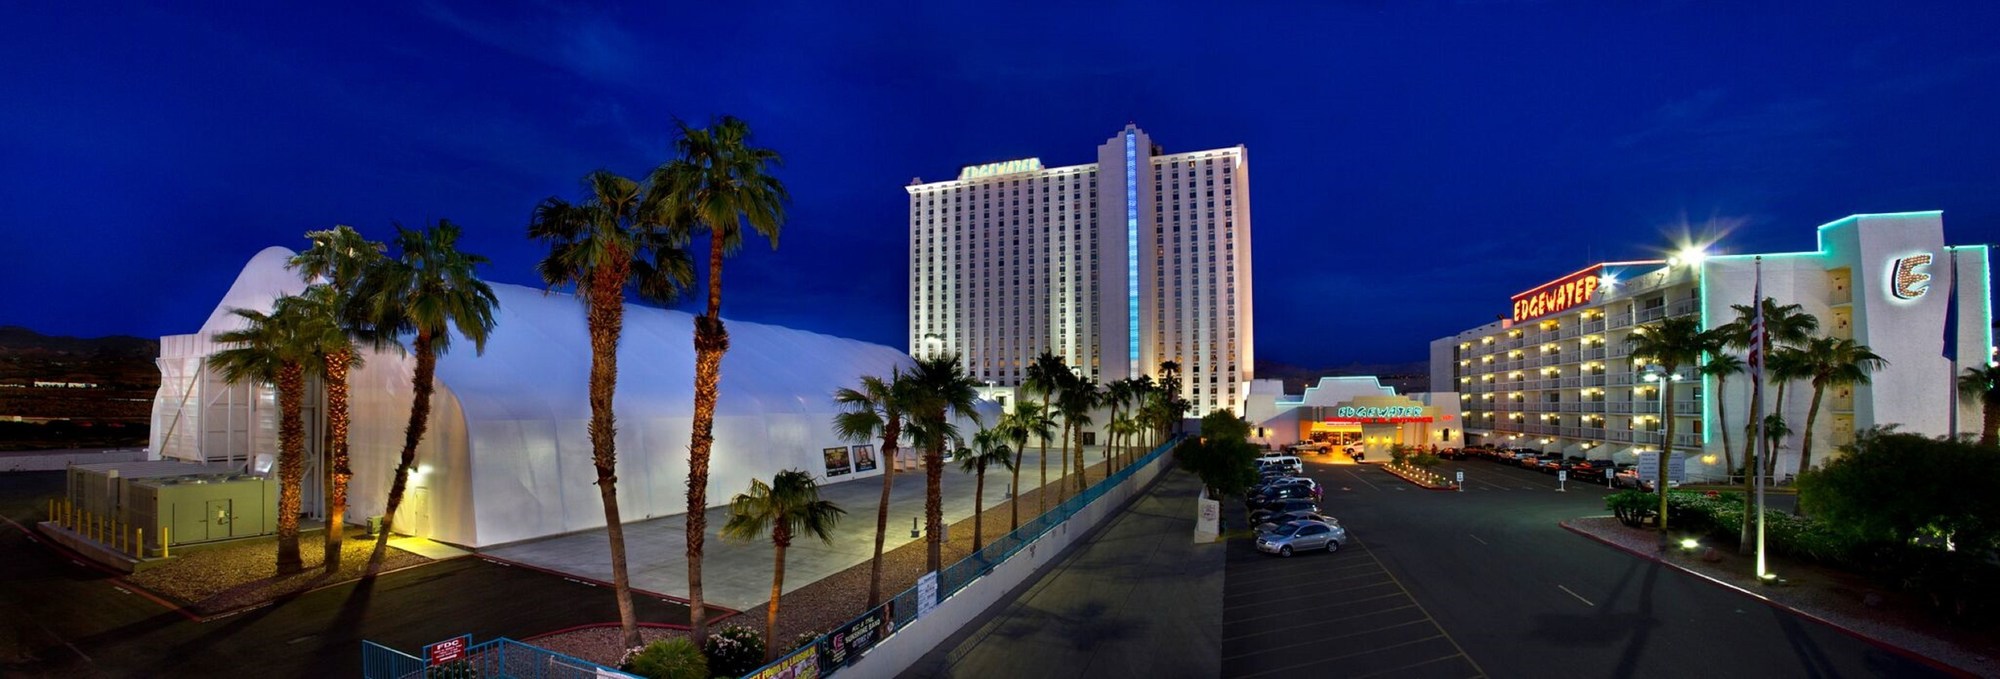 Edgewater Hotel, Casino & Resort